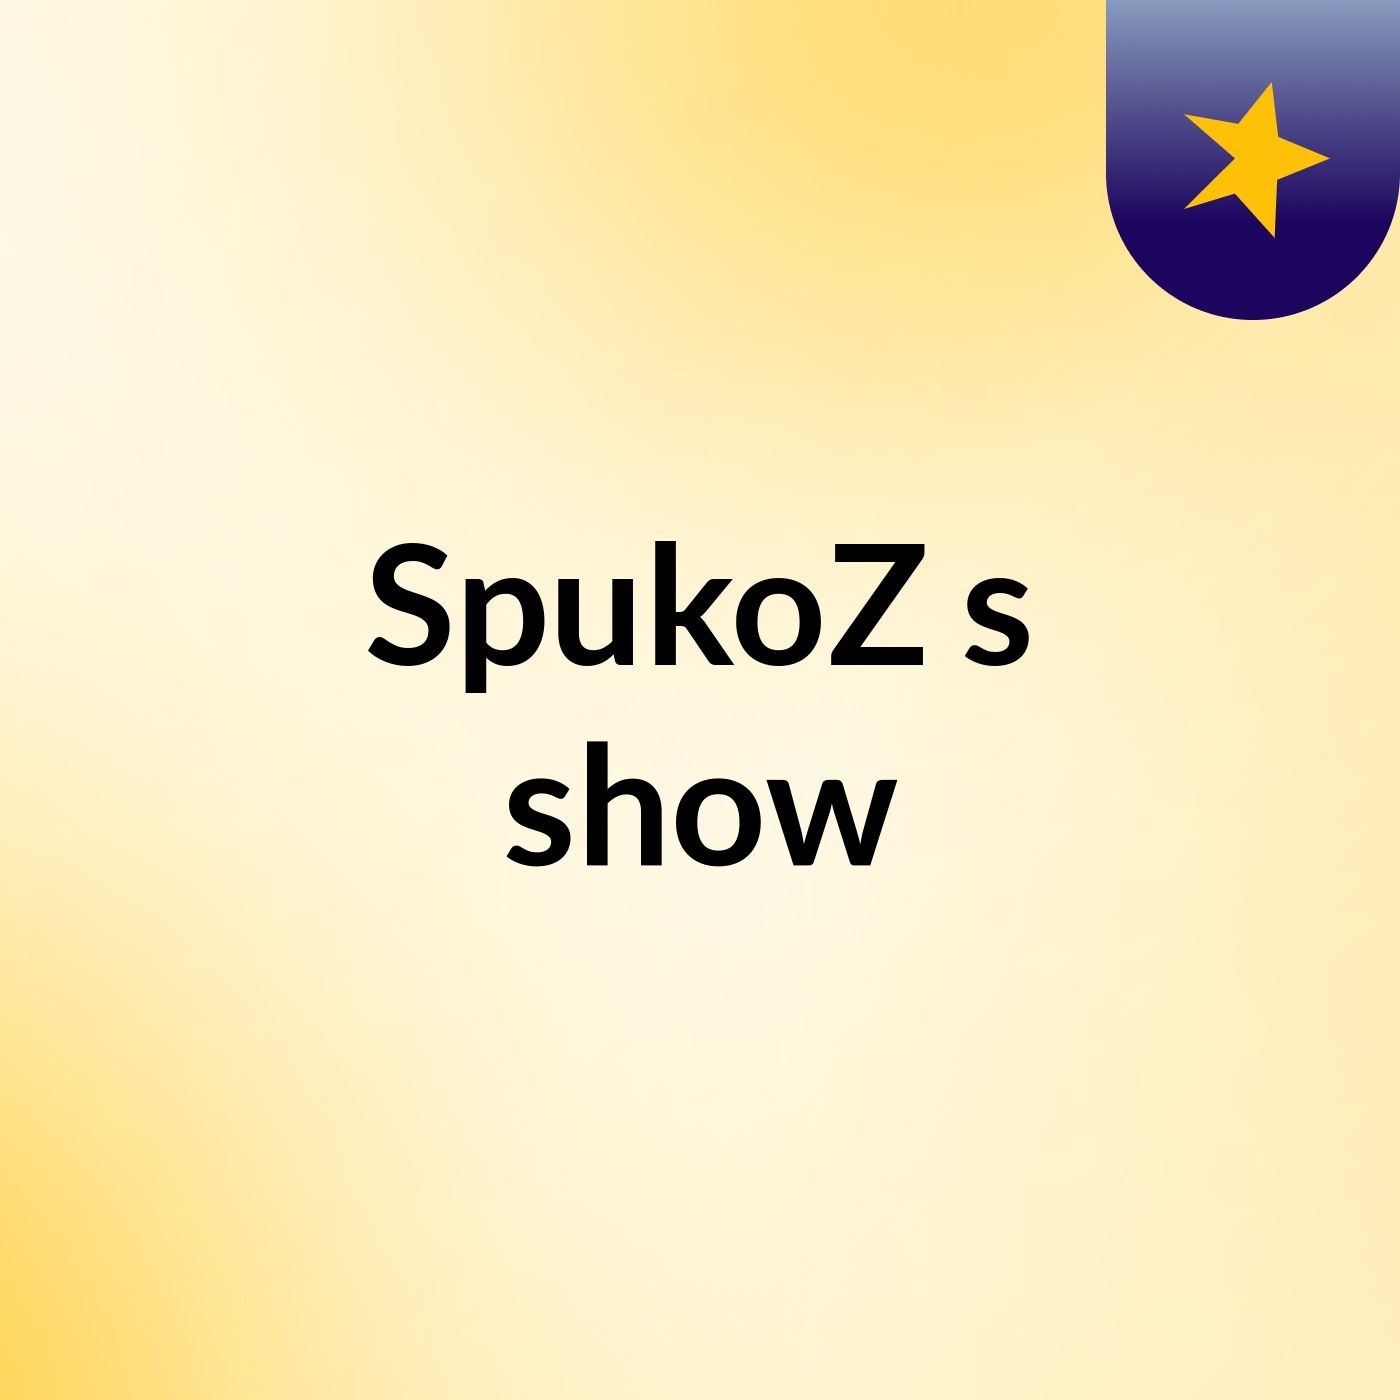 SpukoZ's show